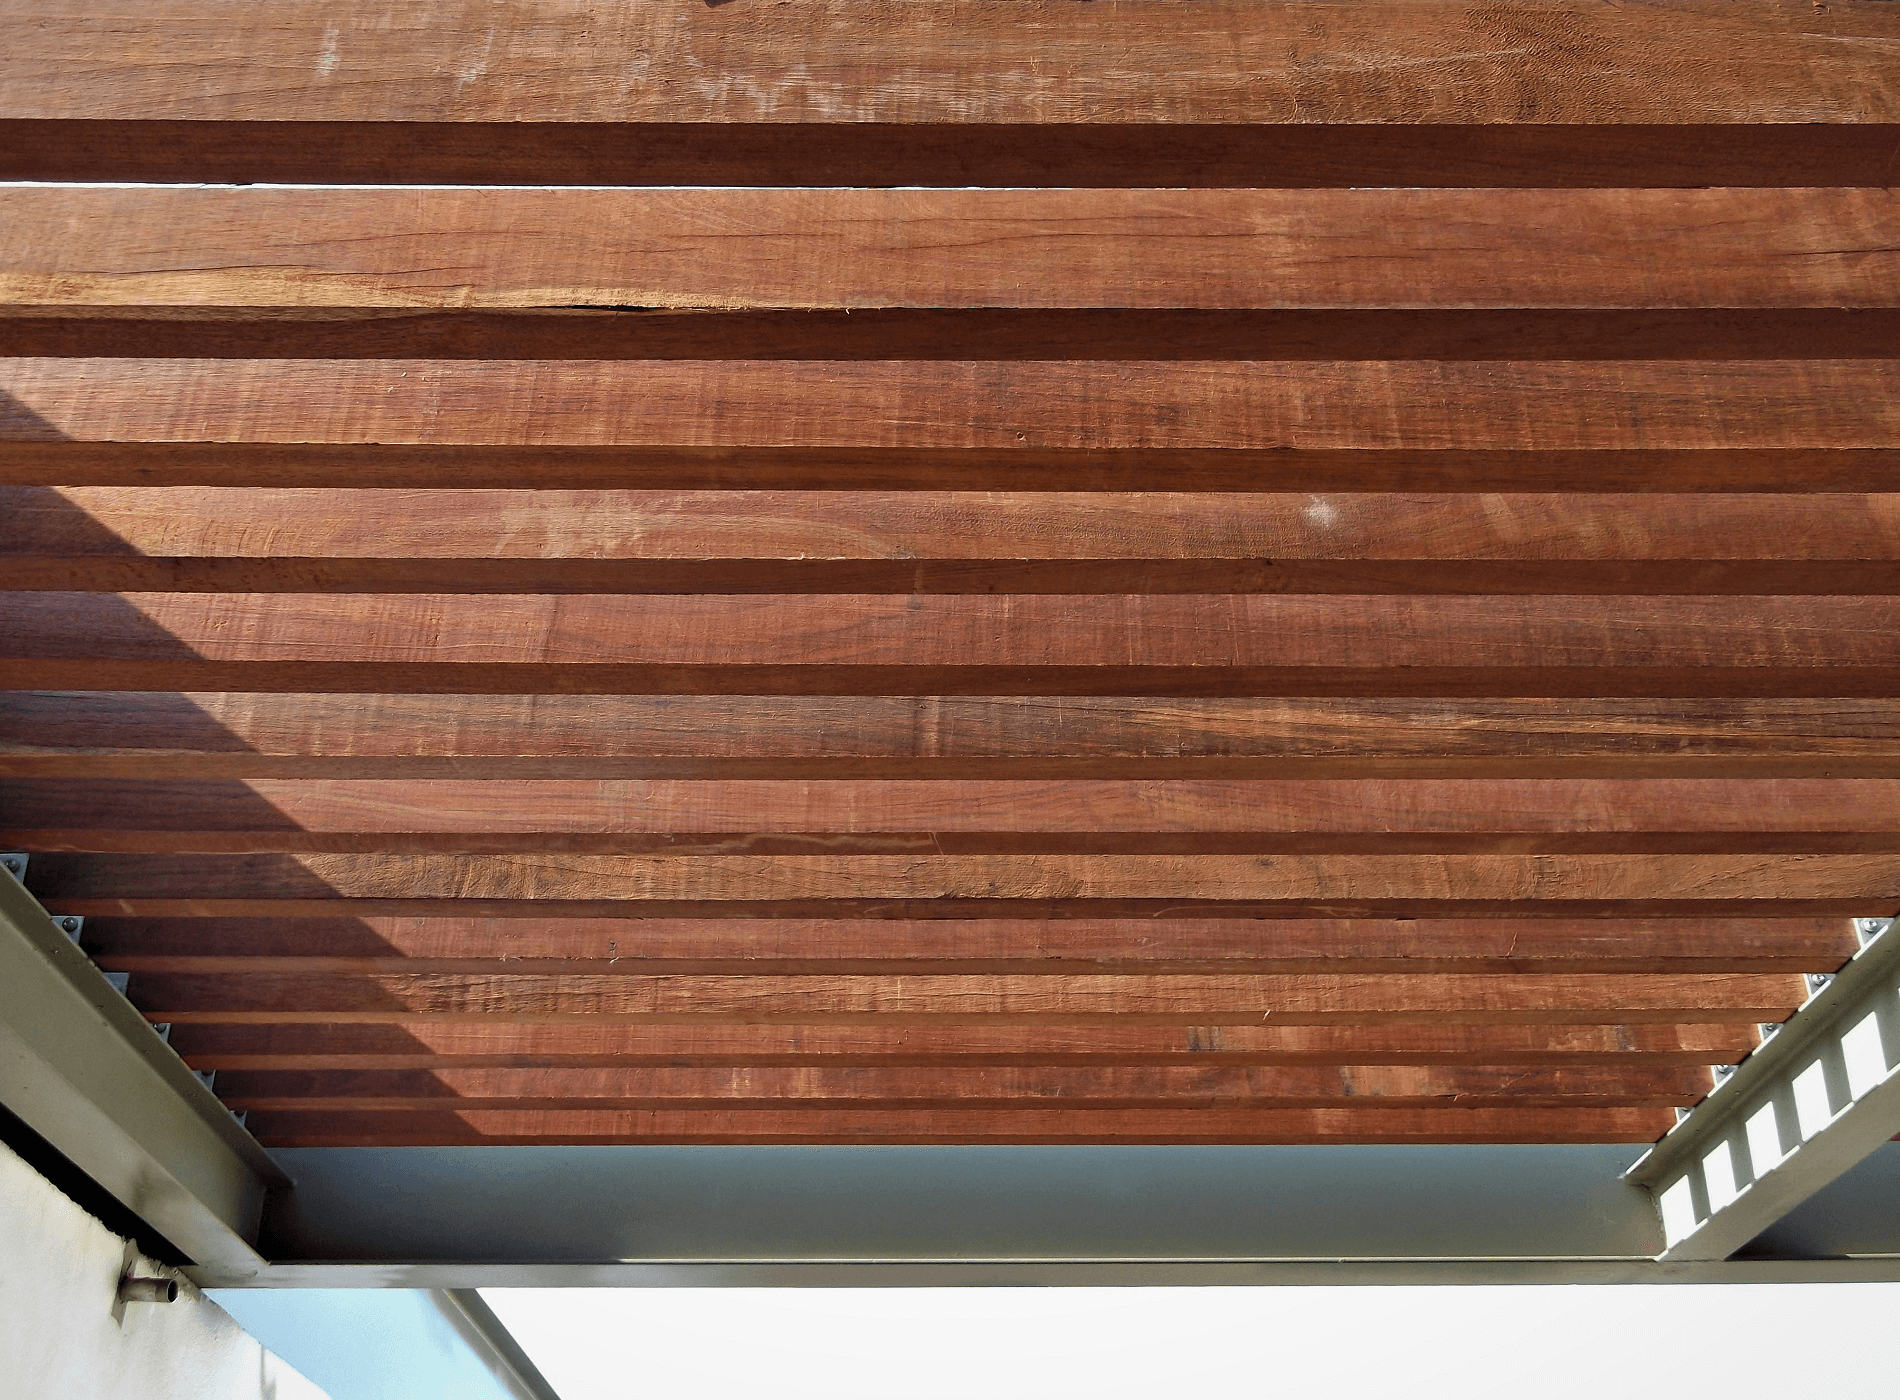 A Estrutura de metal recebeu vigotas de madeira serrada. Contraste dos materiais e texturas em projetos inovadores. Campinas – SP.